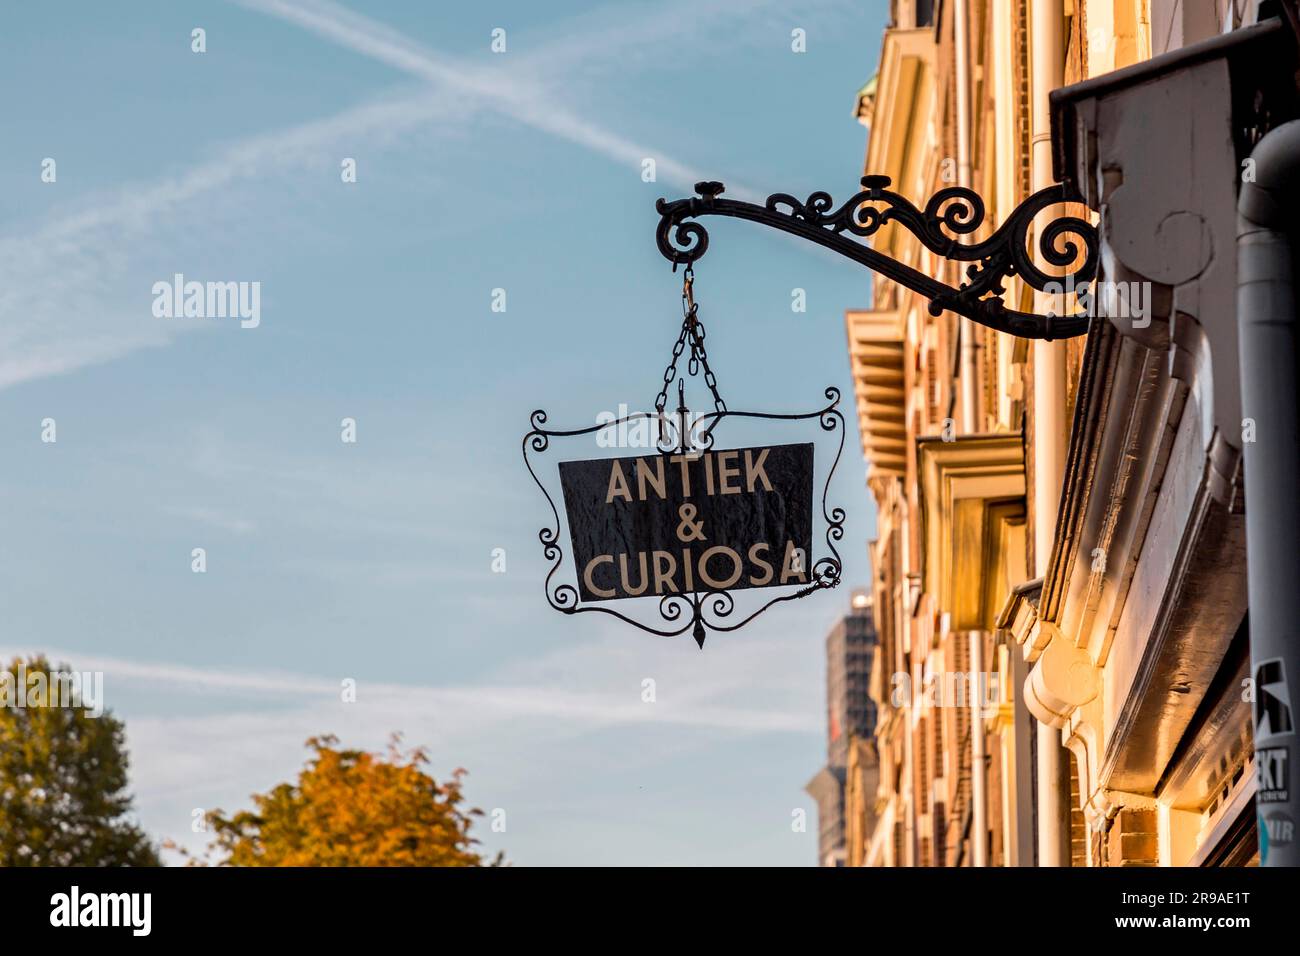 Utrecht, NL - 9. Okt 2021: Dekoratives Metallzeichen von Antiek und Curious, ein kleiner Antiquitätenladen in Utrecht, Niederlande. Stockfoto